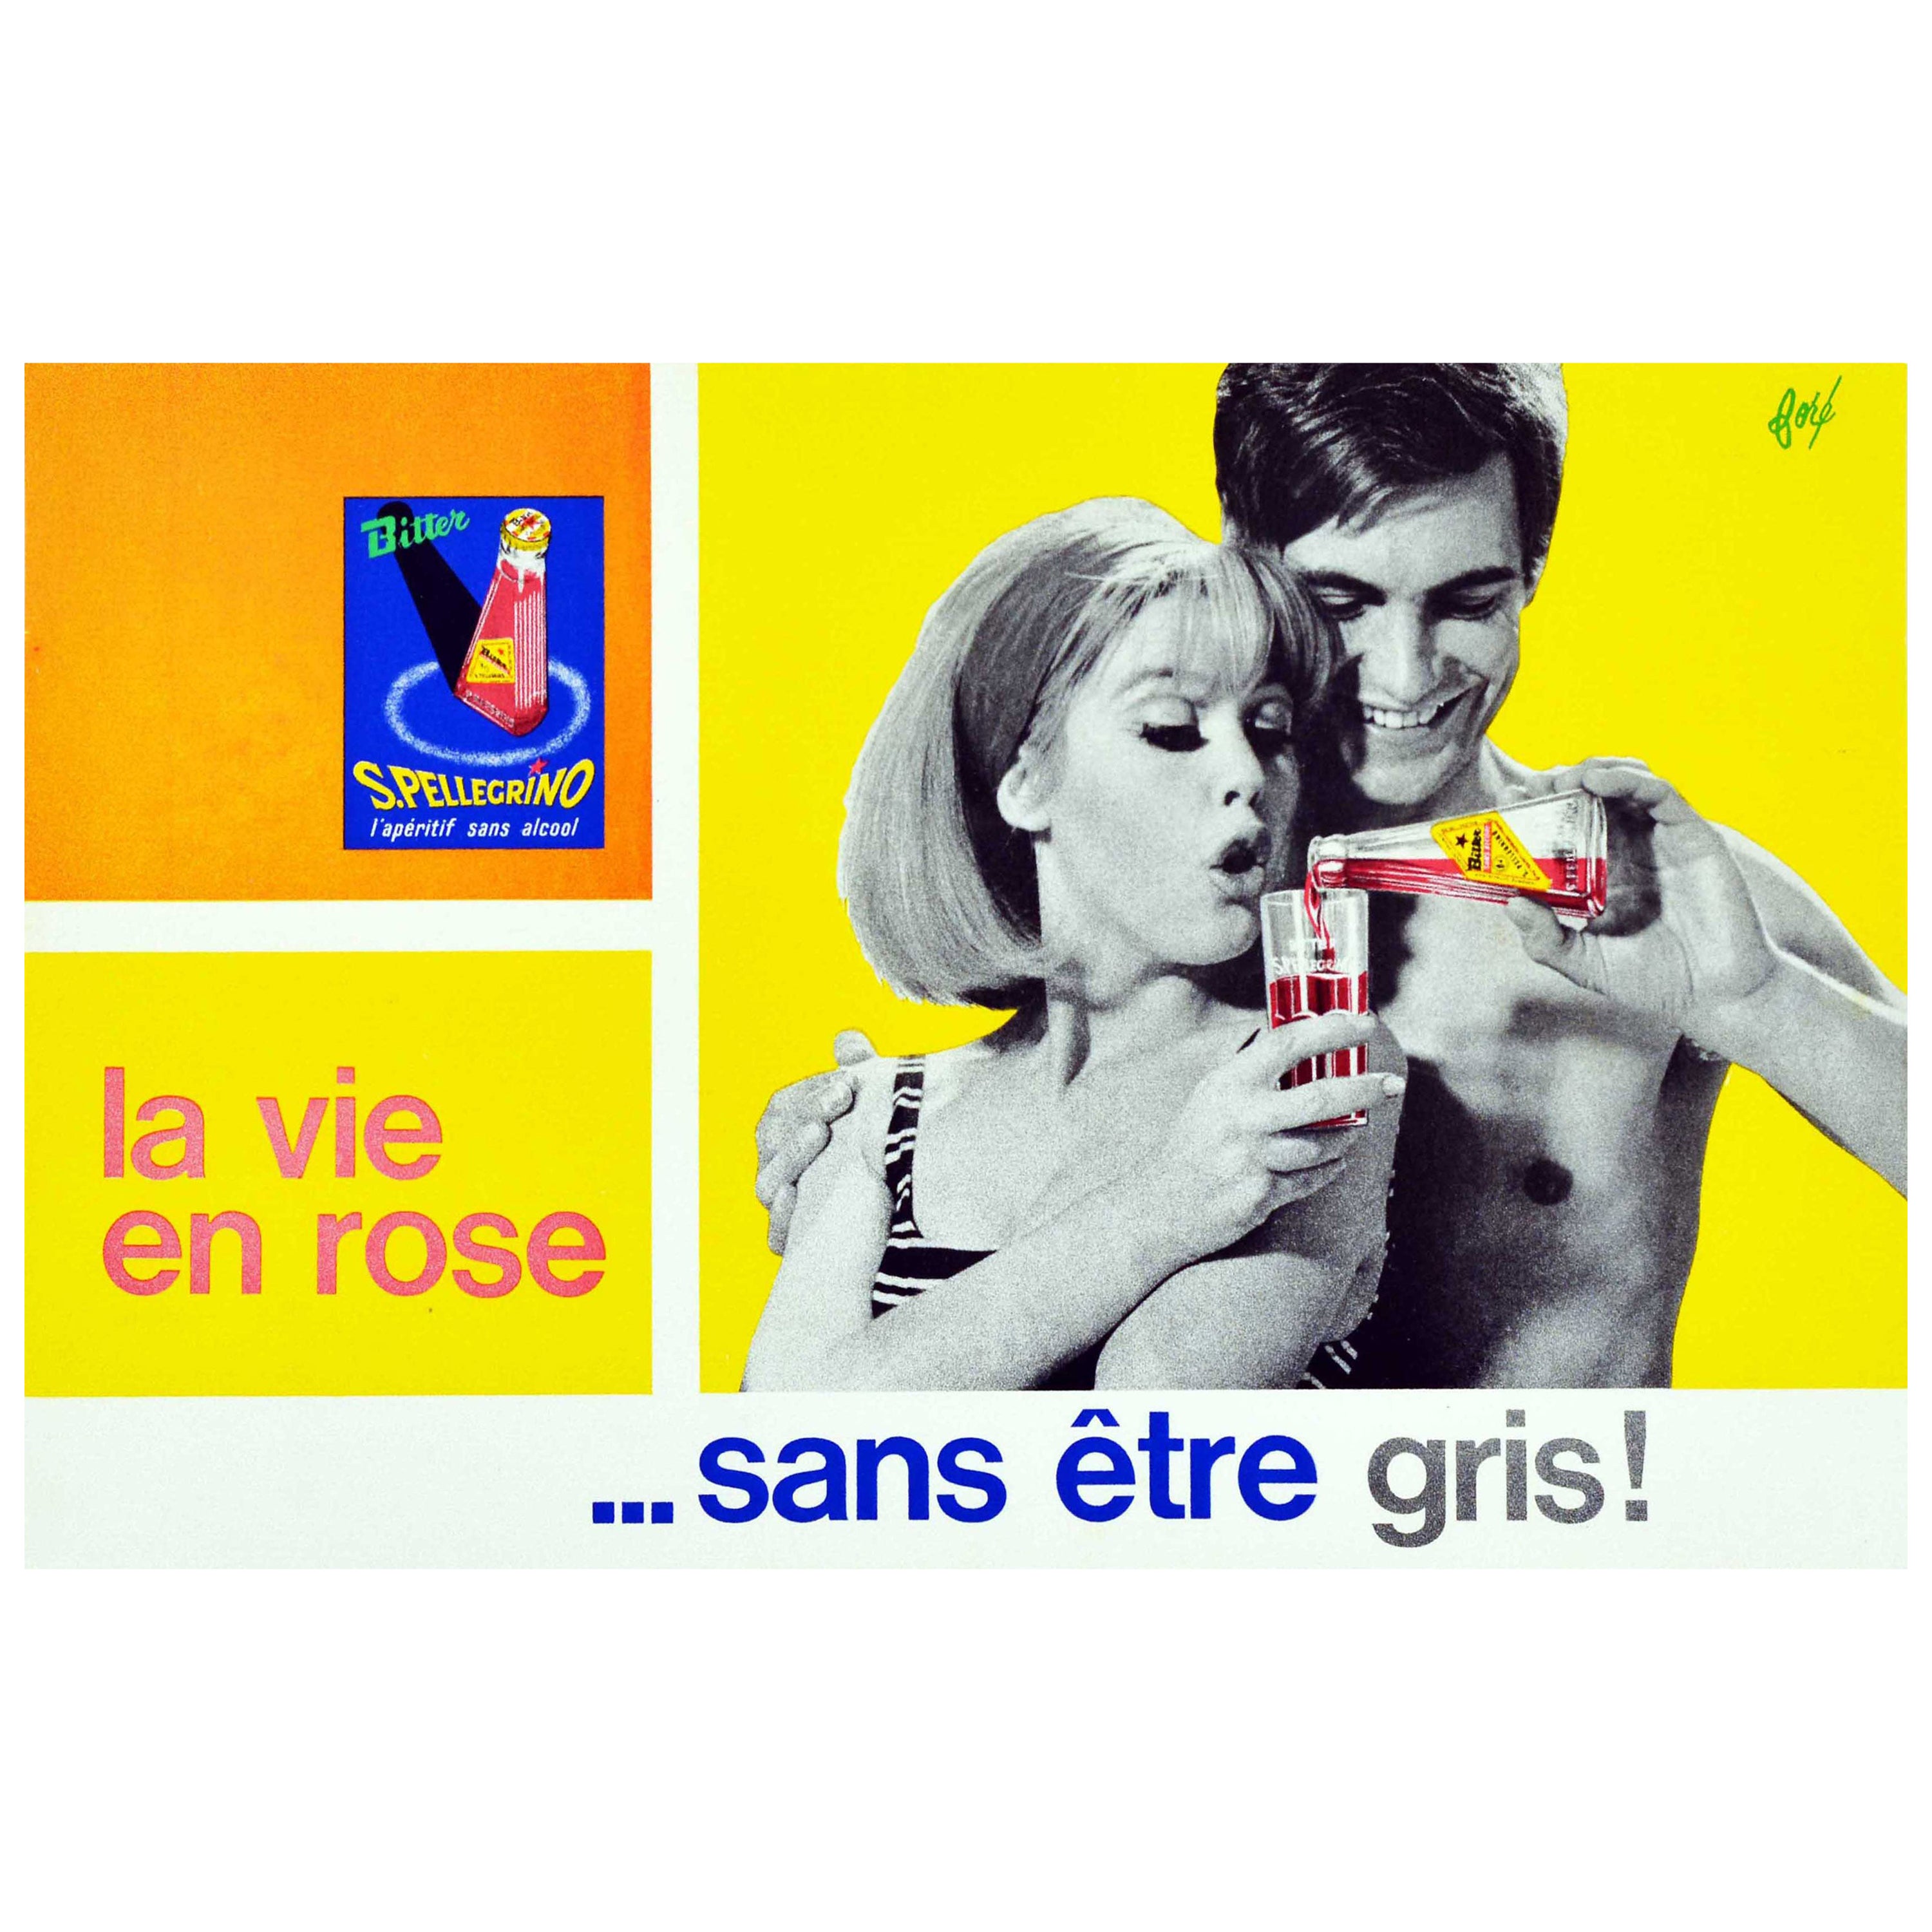 Original Vintage Drink Poster San Pellegrino Bitter Alcohol Free La Vie En Rose For Sale